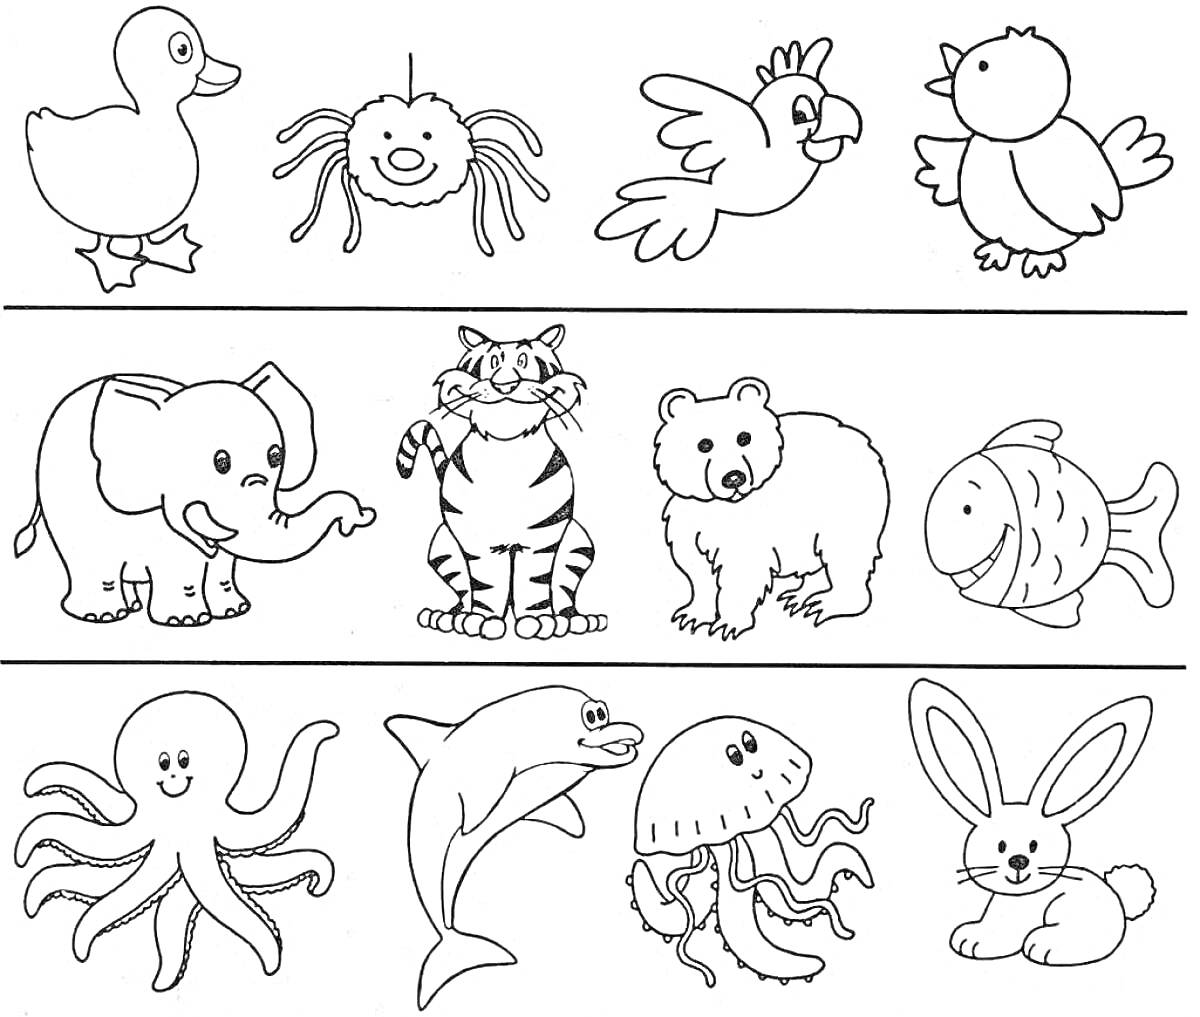 Раскраска раскраска с уткой, пауком, попугаем, птичкой, слоном, тигром, медведем, рыбкой, осьминогом, дельфином, медузой и кроликом